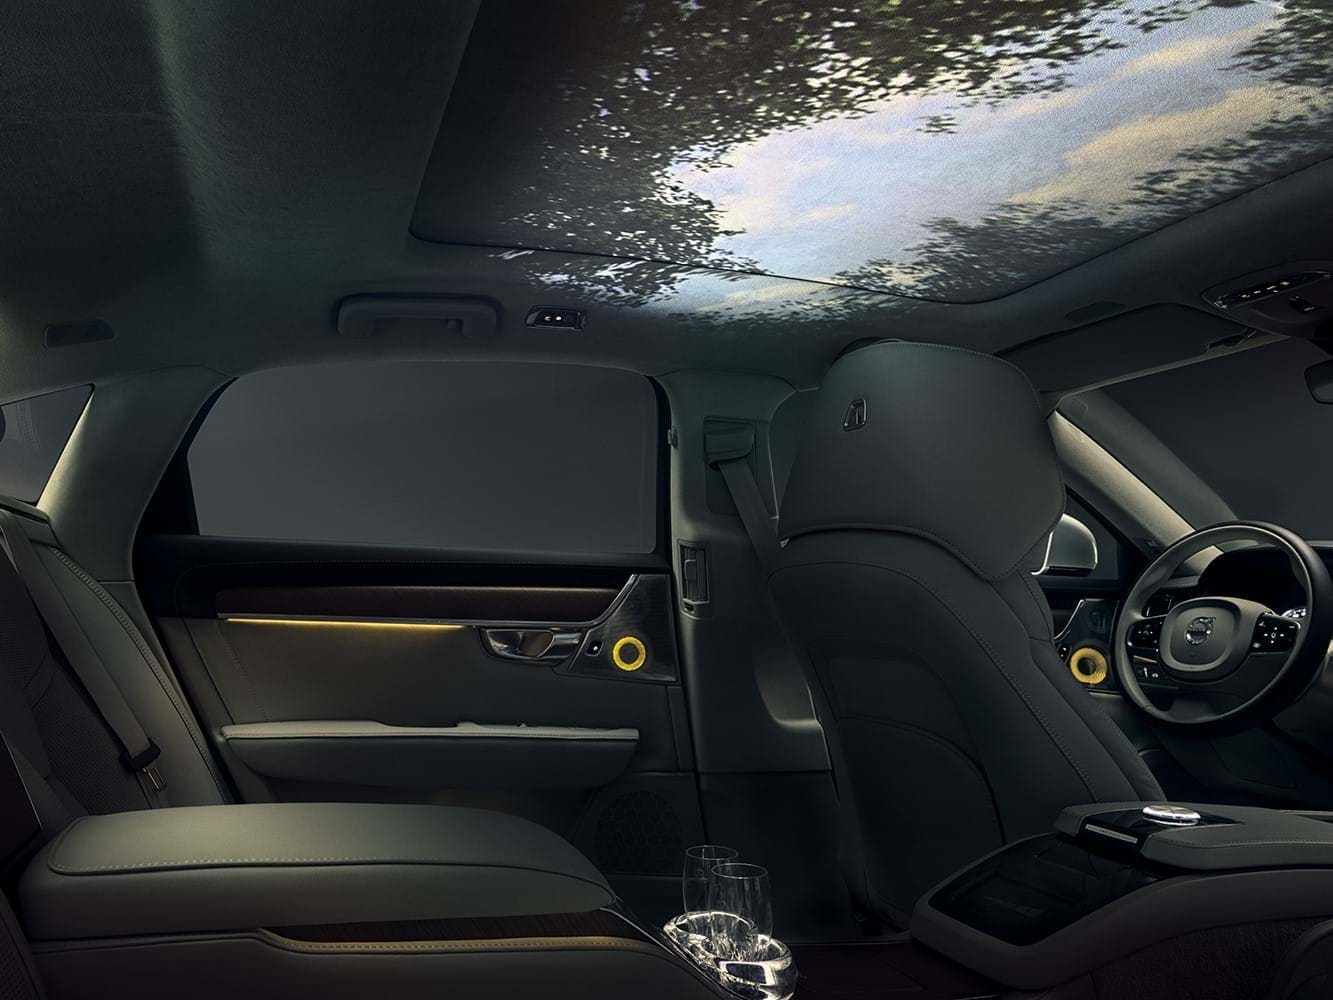 Notranjost našega koncepta za veččutno doživetje v avtomobilu s panoramskim pogledom na gozdno nebo v stropu avtomobila